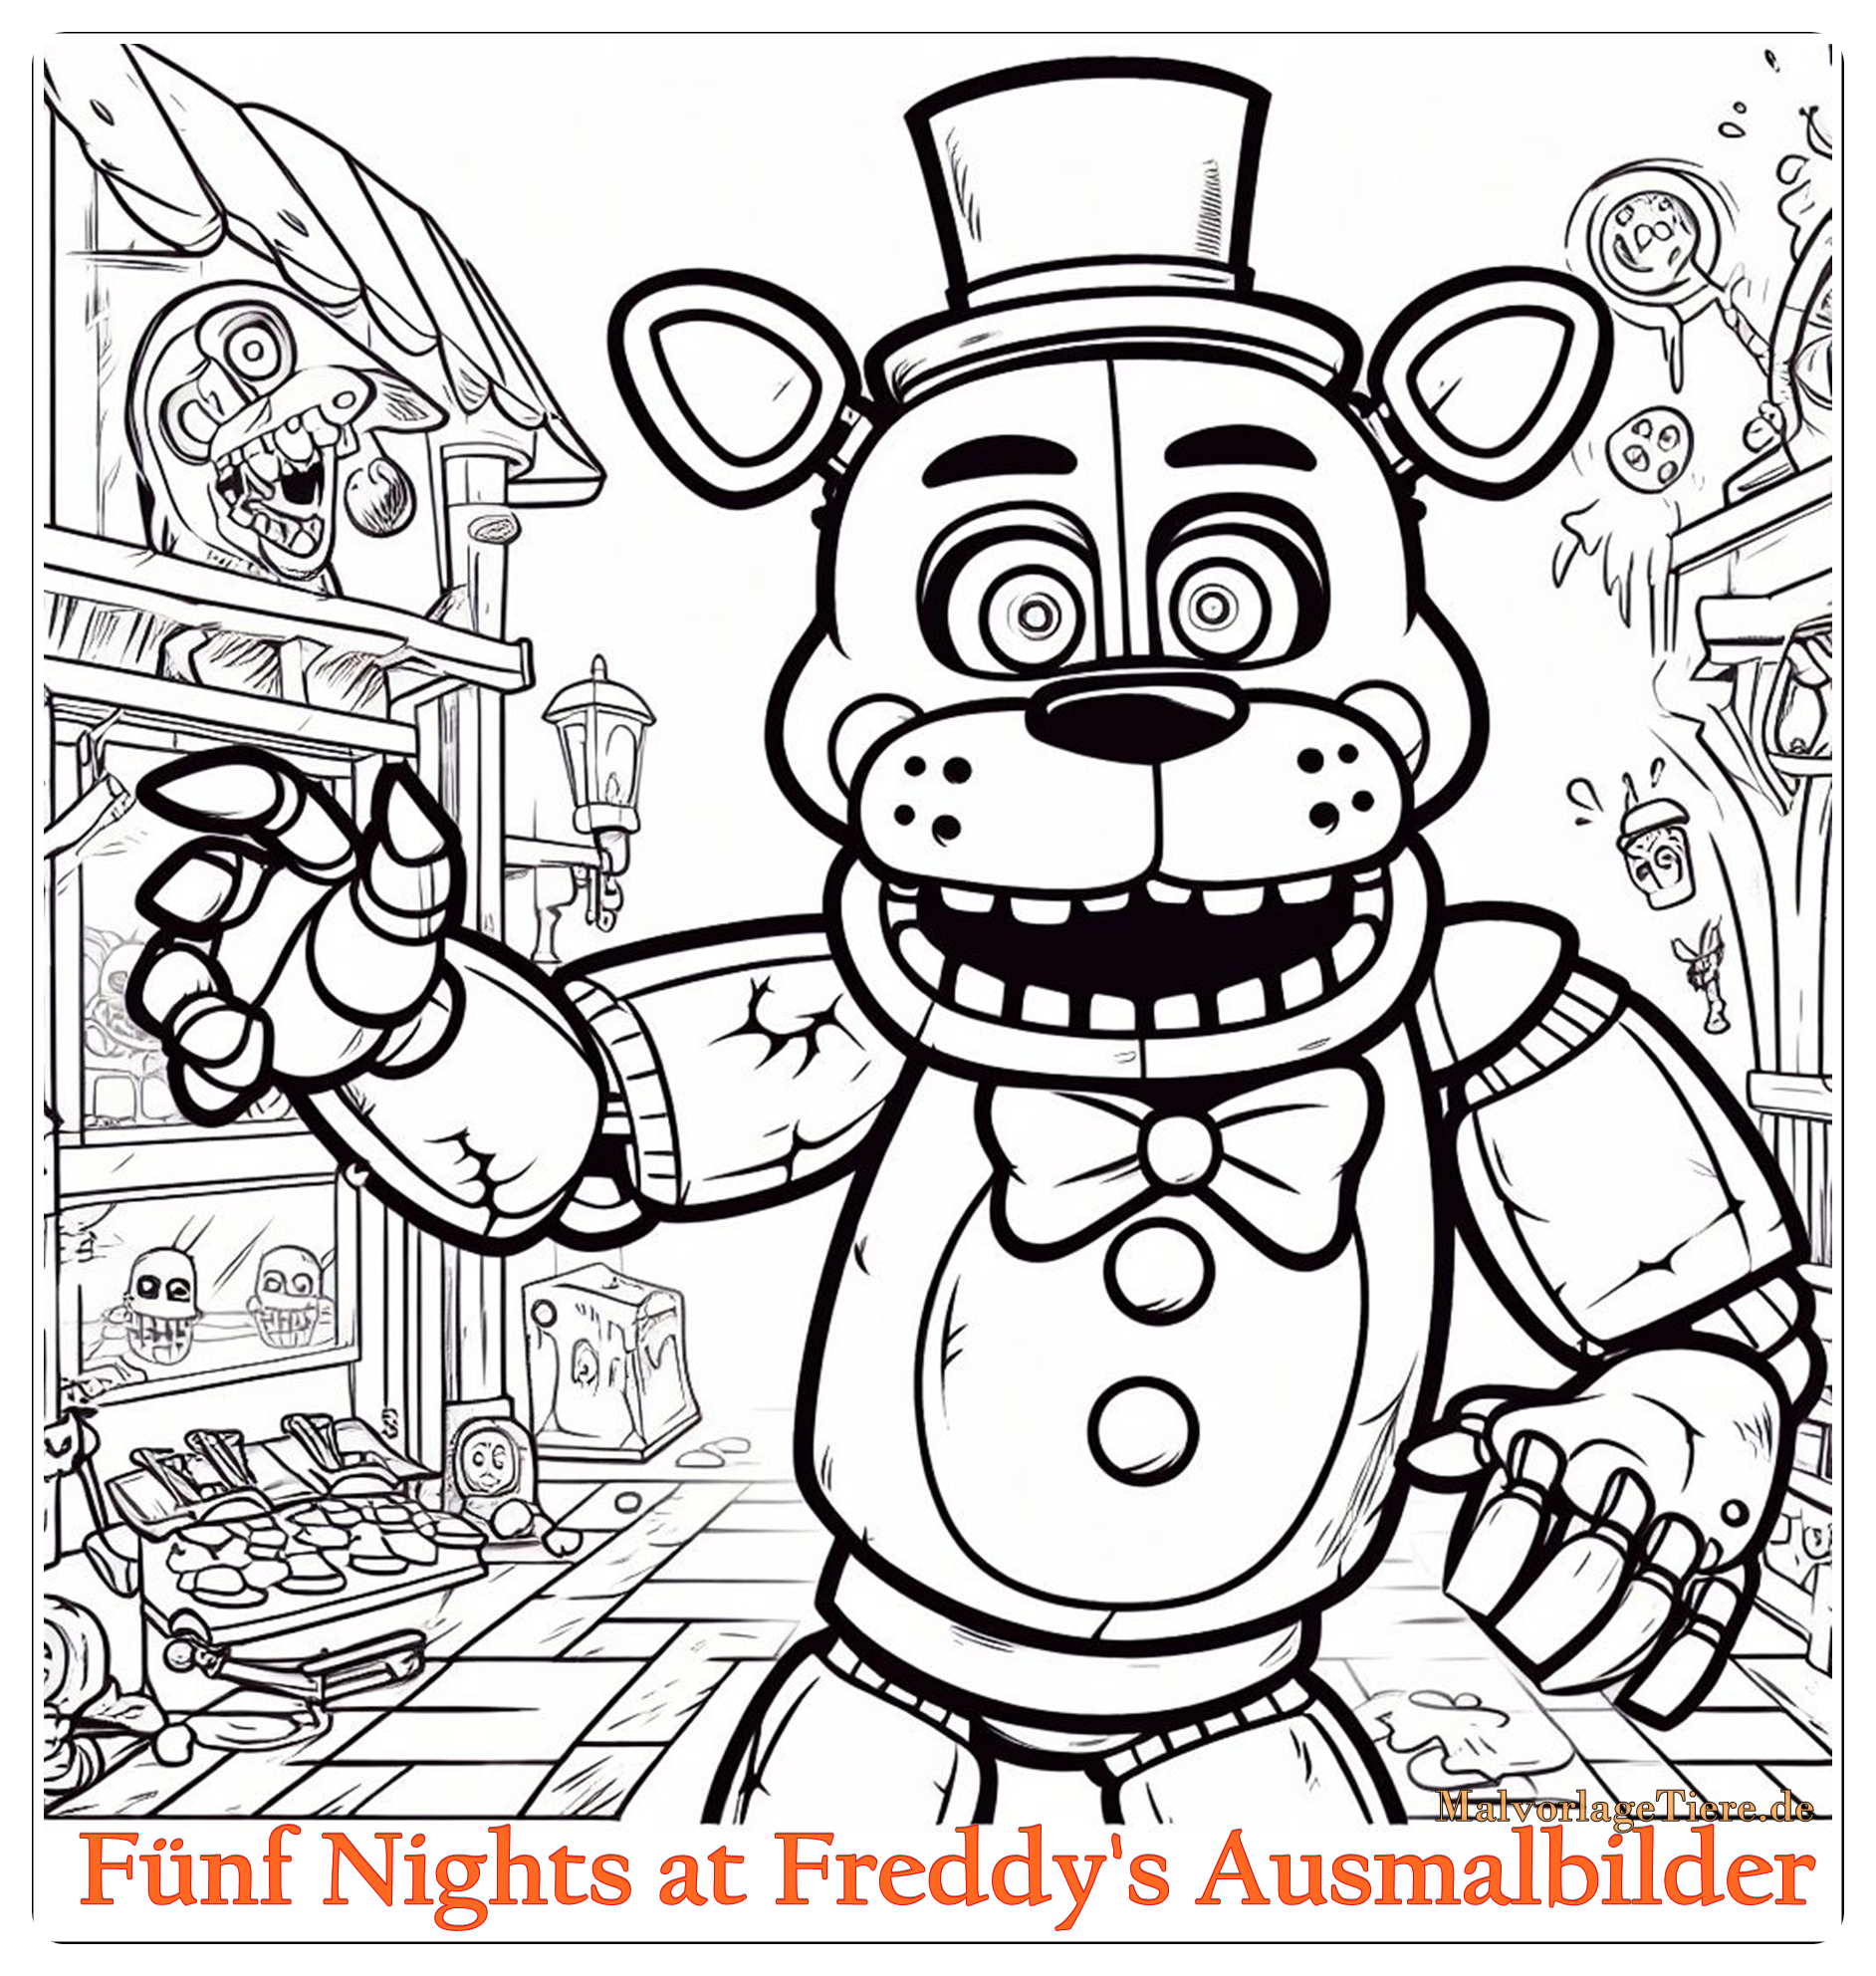 Fünf Nights at Freddy's Ausmalbilder 02 by malvorlagetiere.de